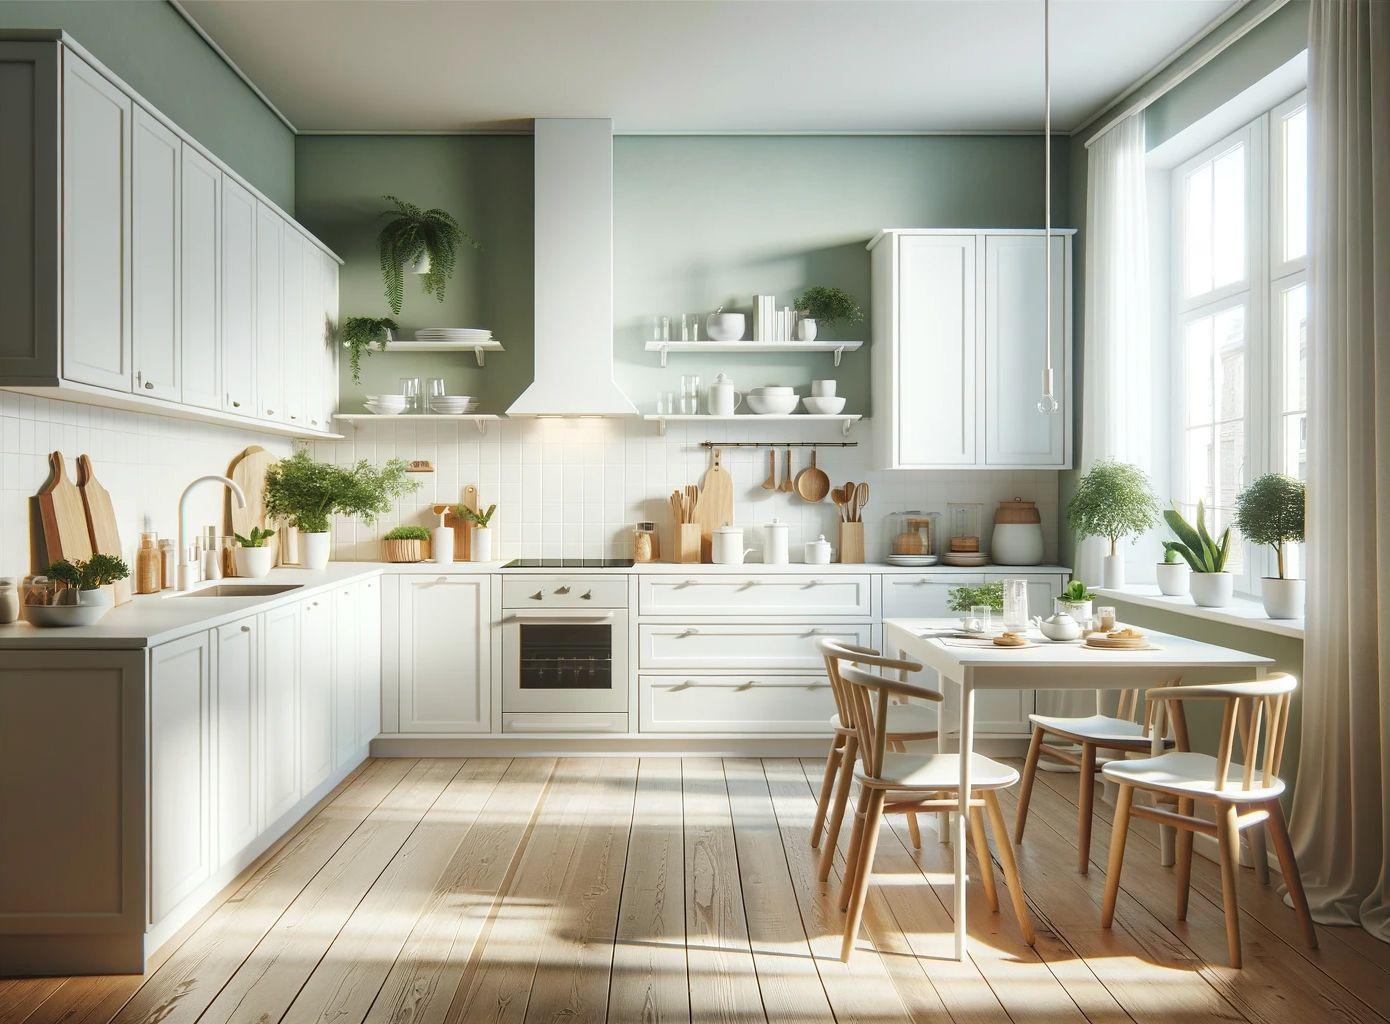 Eine moderne Küche mit einem sauberen, weißen Design. Die Schränke, Arbeitsplatten und Geräte sind ganz in Weiß gehalten, so dass ein eleganter und minimalistischer Look entsteht.